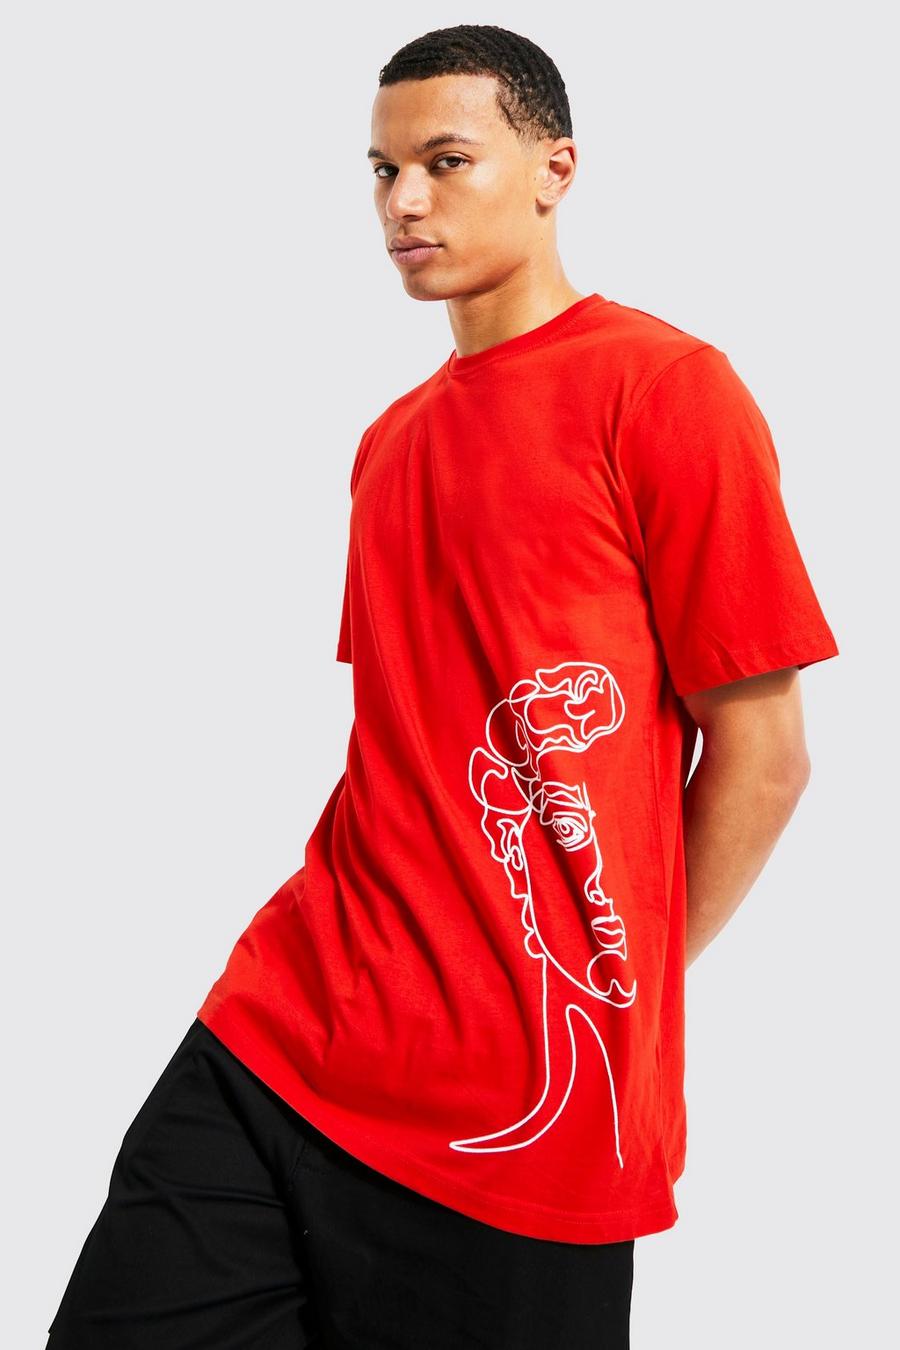 אדום rojo טישרט עם הדפס גרפי של רישום קו בסגנון רומאי, לגברים גבוהים